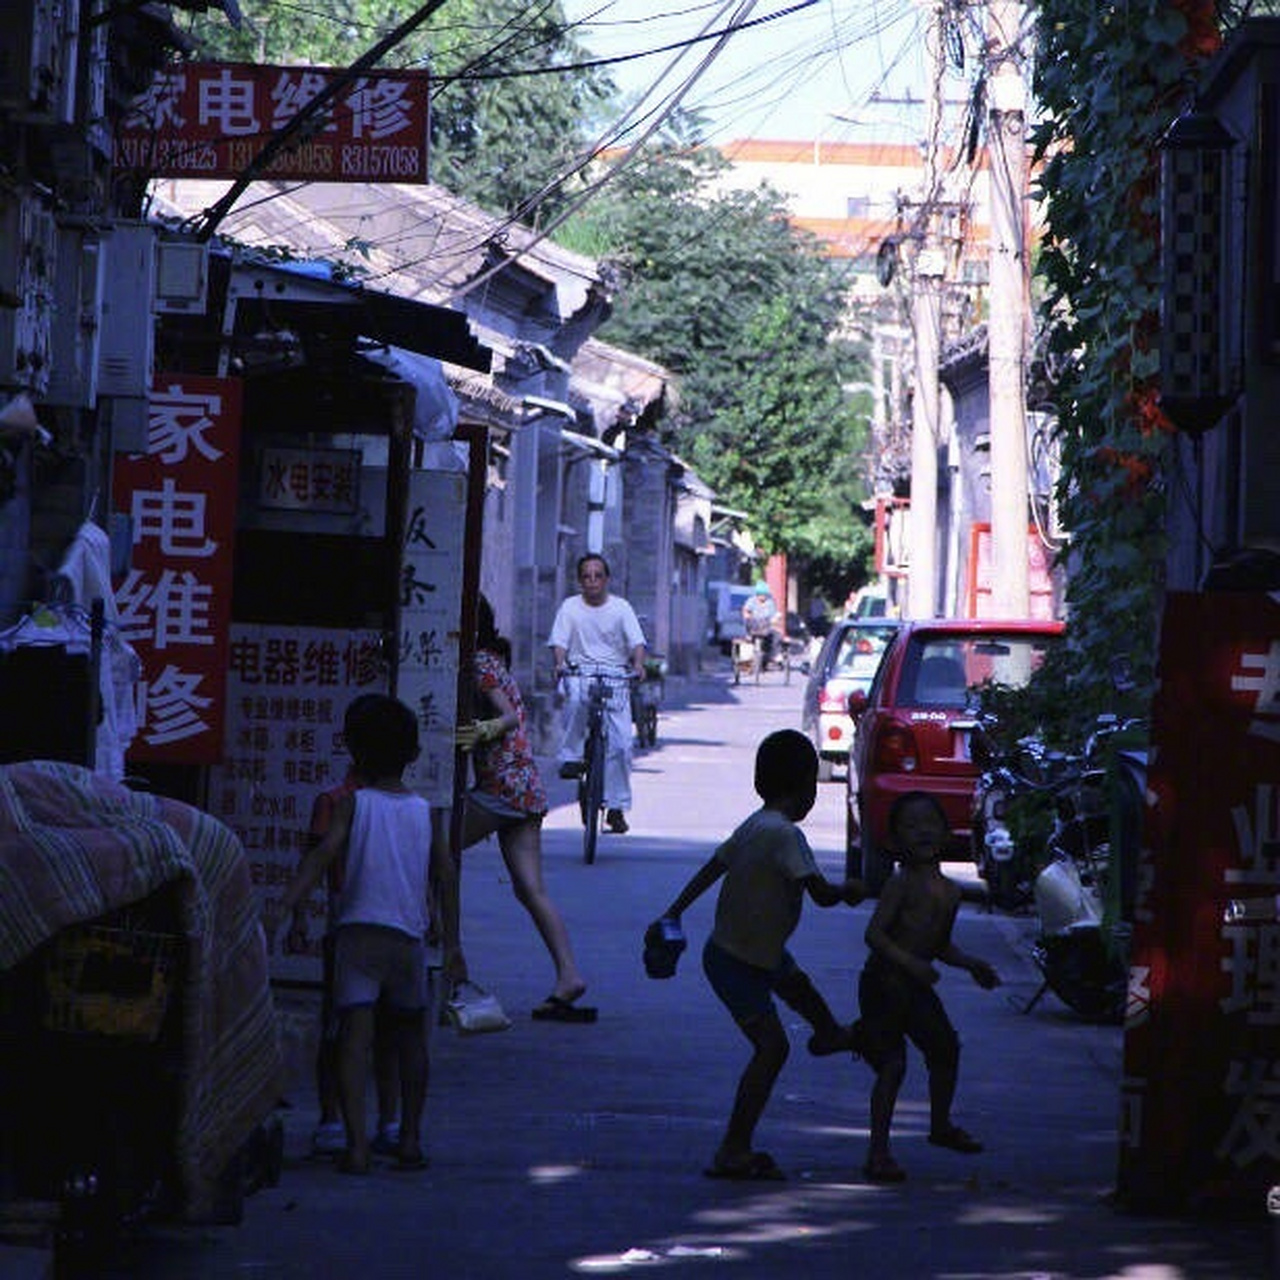 走进北京胡同,仿佛回到了90年代,就连日色也变得缓慢起来